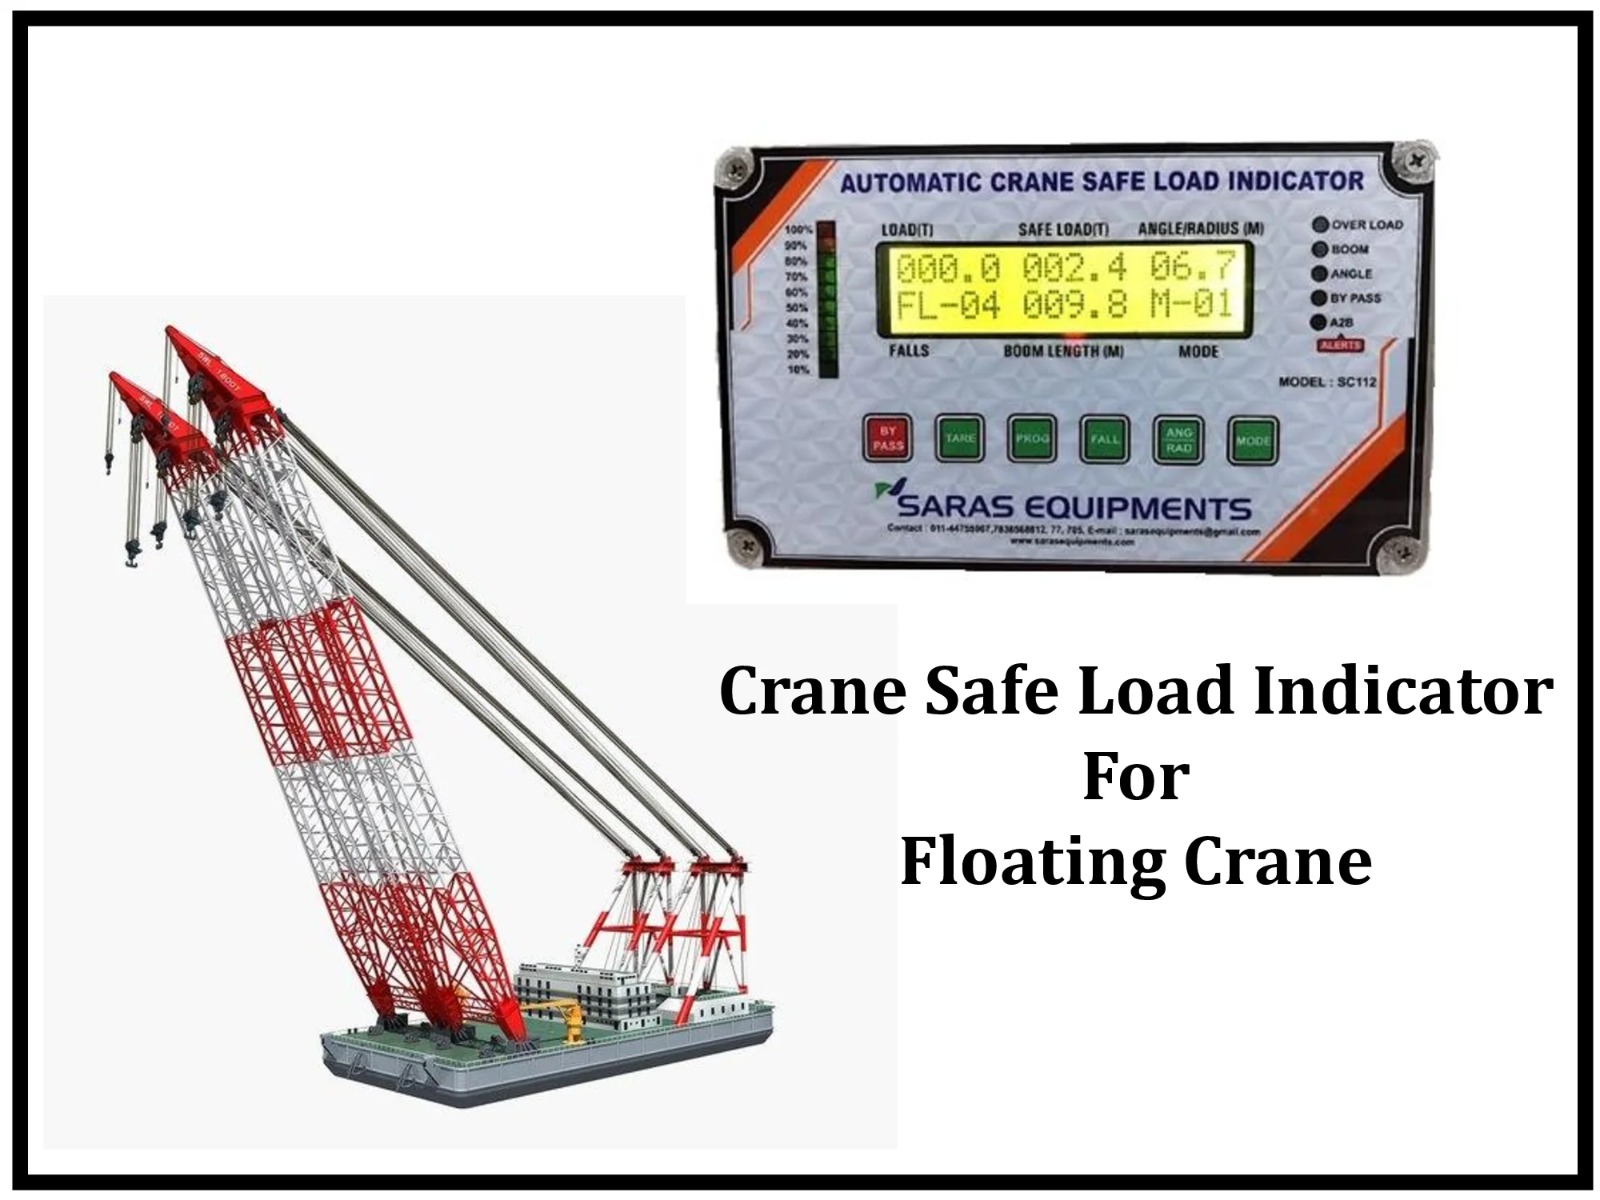 Crane Safe Load Indicator for Floating Crane